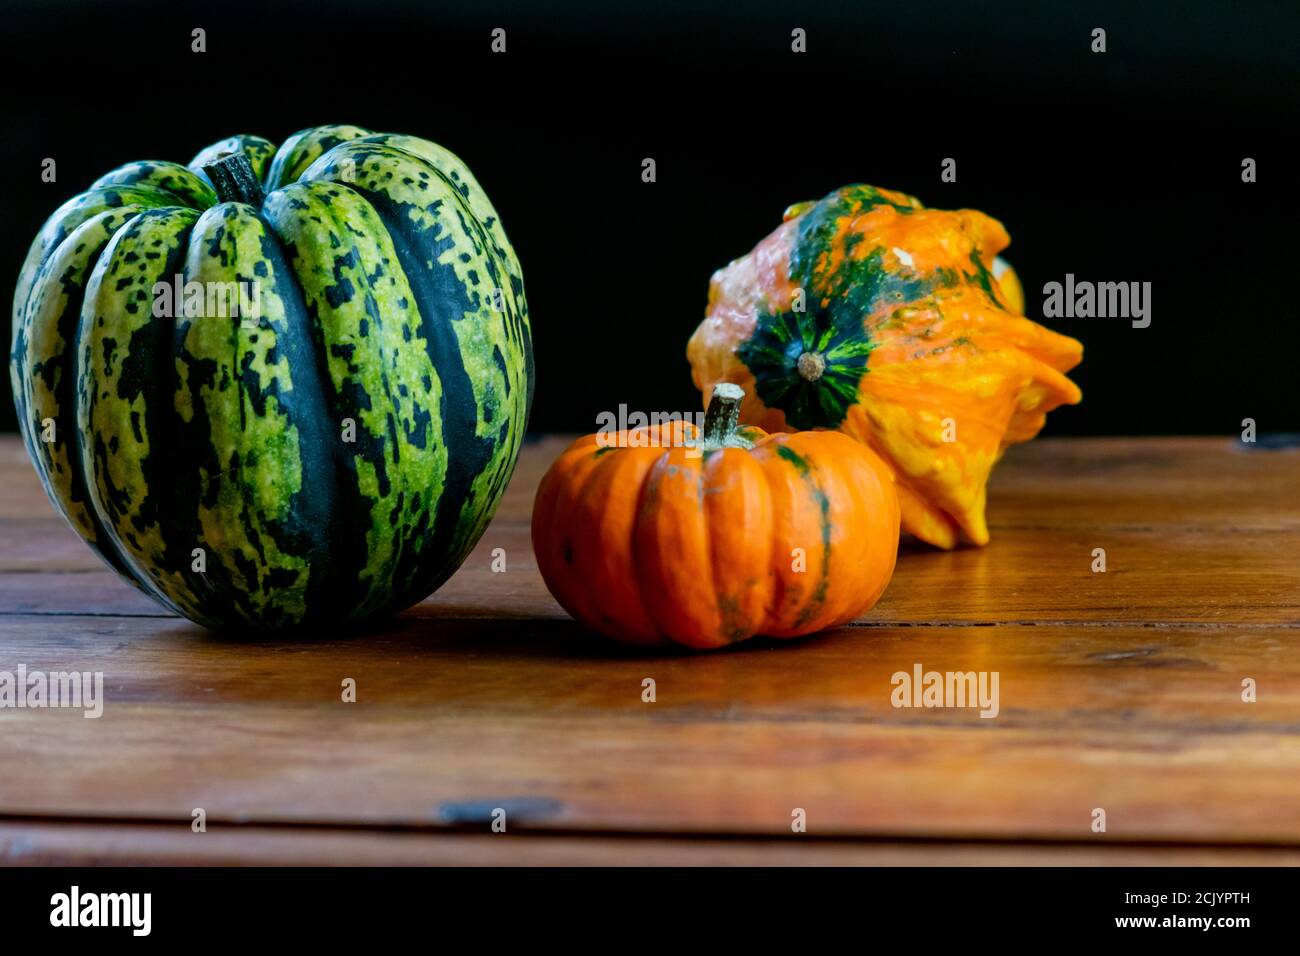 Varietà di zucche su tavola rustica in legno e fondo nero chiaro. Verdure simboliche autunnali nei colori verde, giallo e arancione. Foto Stock